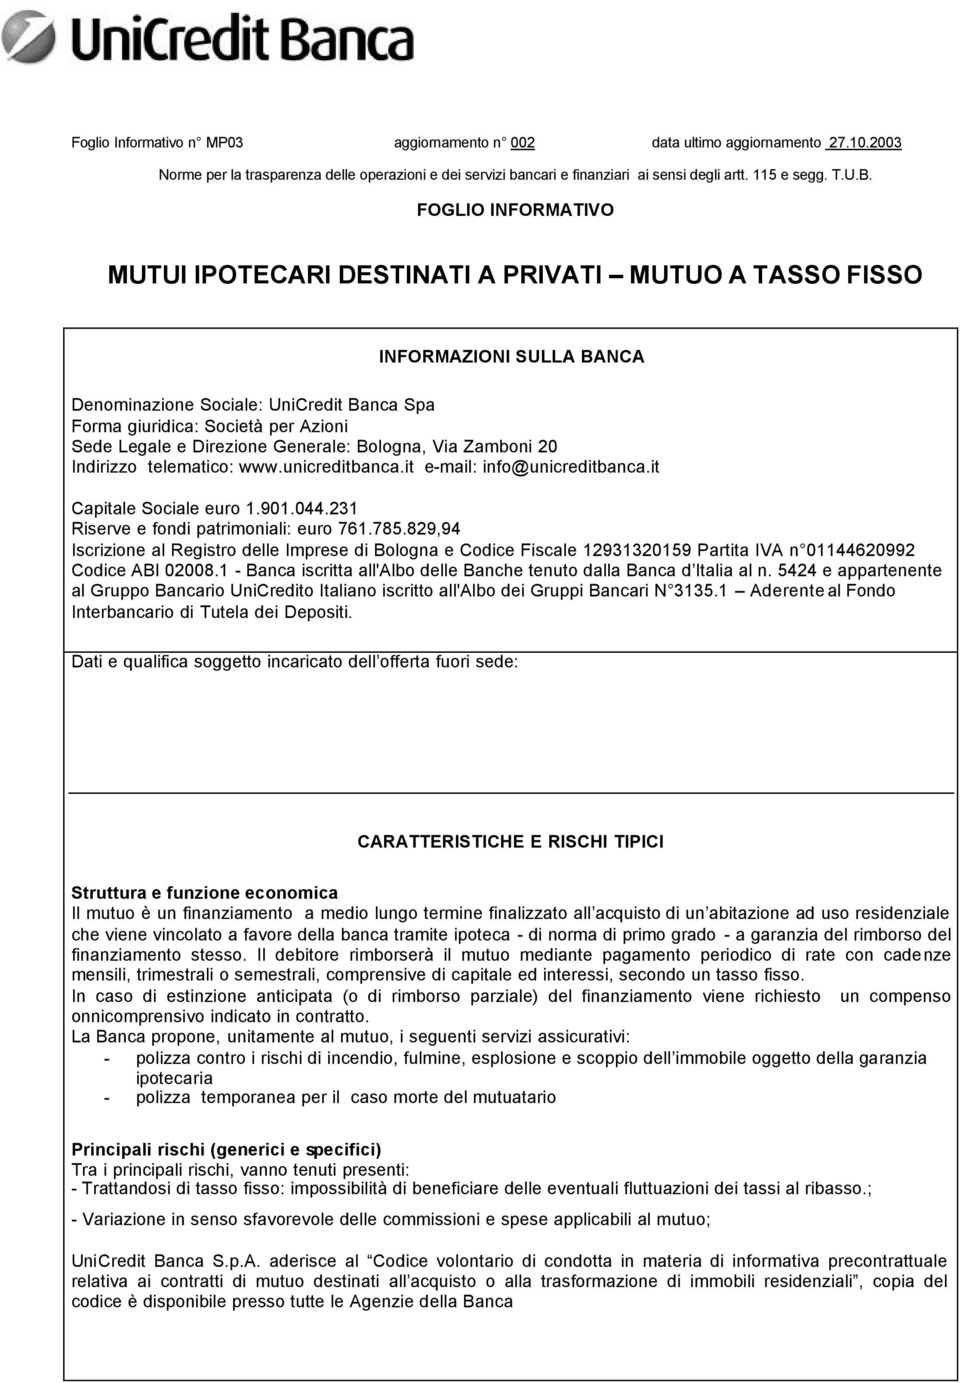 Direzione Generale: Bologna, Via Zamboni 20 Indirizzo telematico: www.unicreditbanca.it e-mail: info@unicreditbanca.it Capitale Sociale euro 1.901.044.231 Riserve e fondi patrimoniali: euro 761.785.